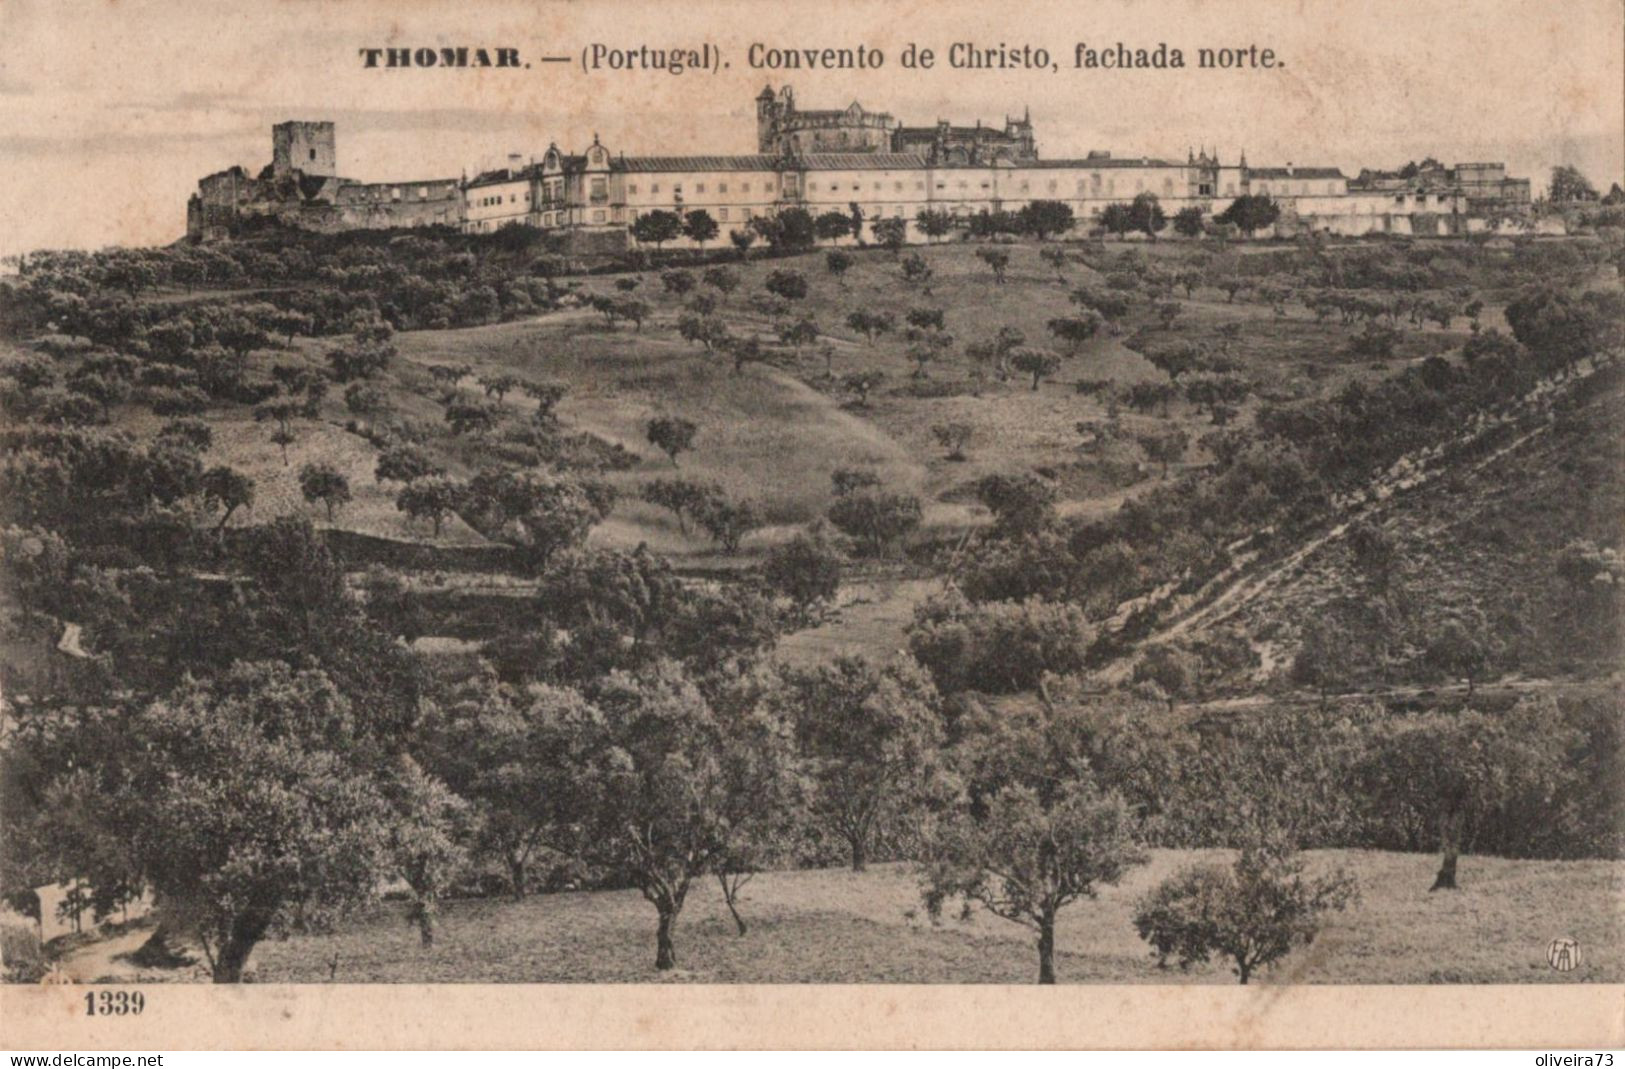 TOMAR - THOMAR - Convento De Cristo, Fachada Norte (Ed. F. A. Martins. Nº 1339) - PORTUGAL - Santarem